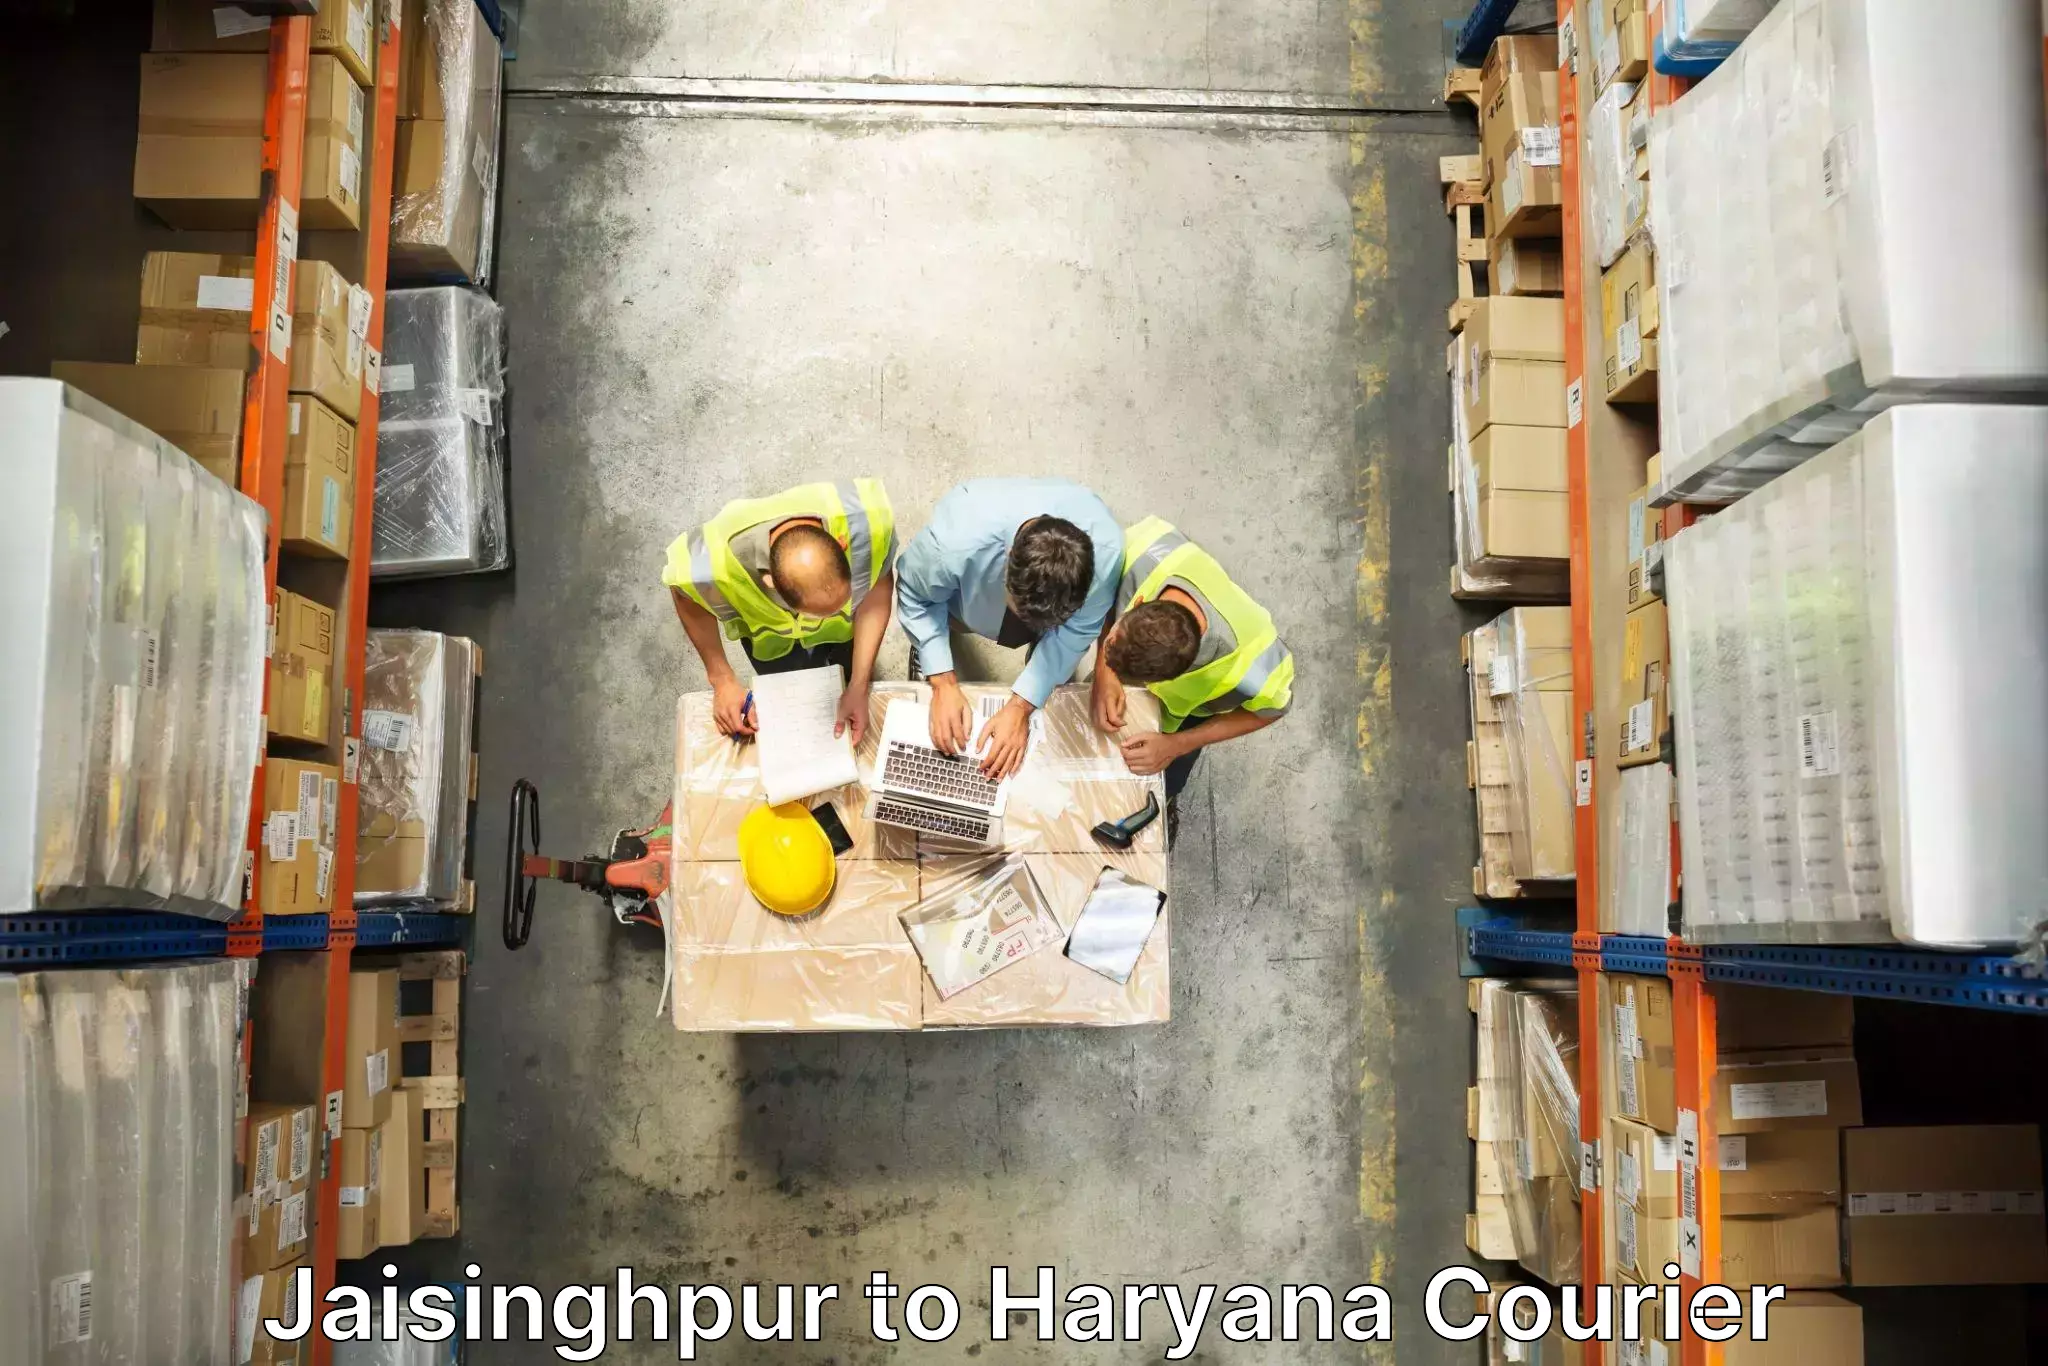 Furniture moving experts Jaisinghpur to Kurukshetra University